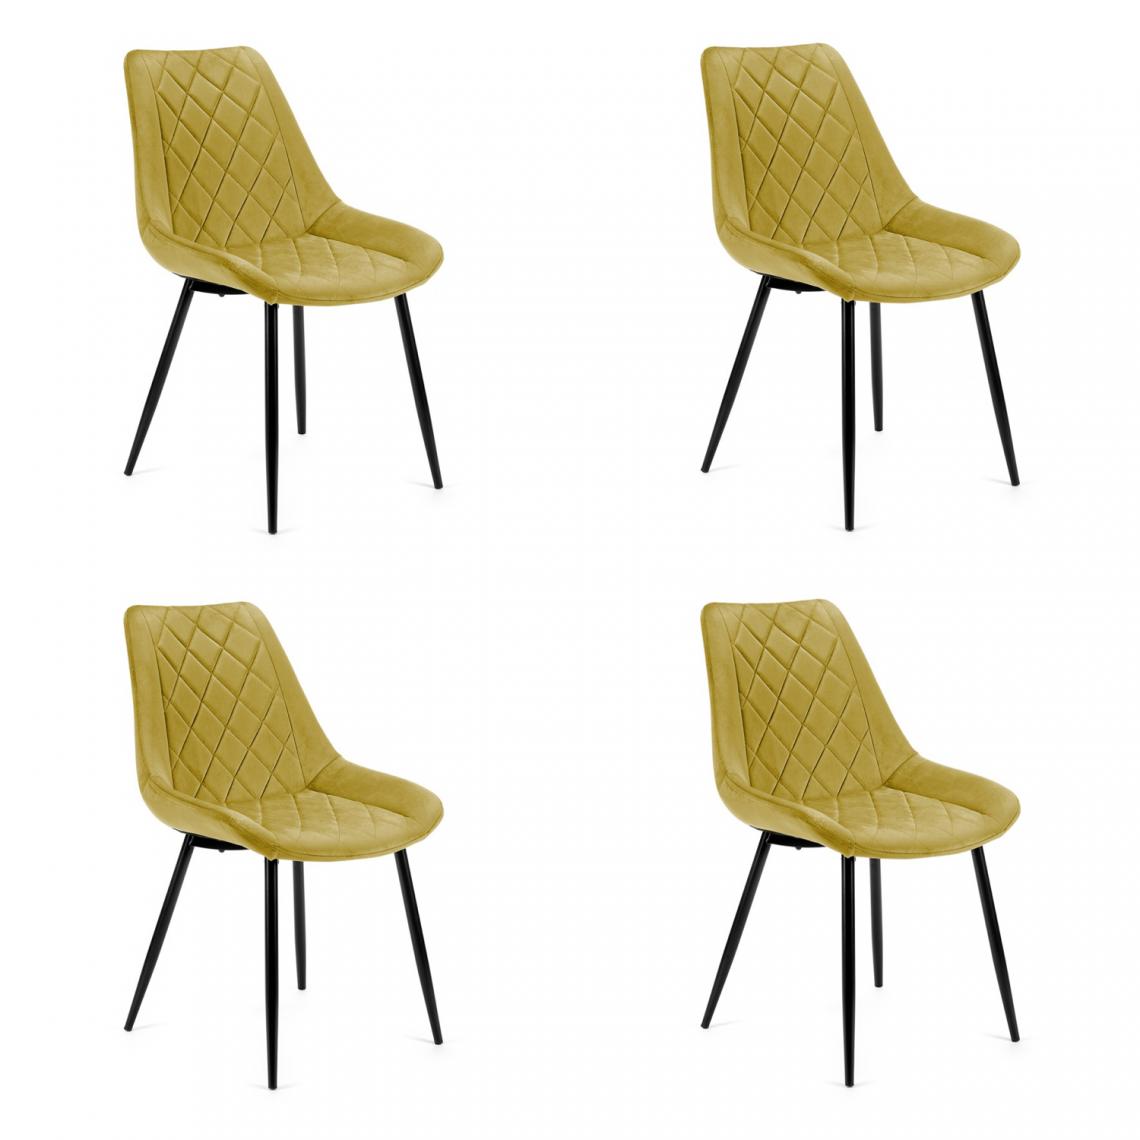 Hucoco - TERLO - Chaise rembourrée 4 pcs style moderne salon/salle à manger - 84x44x43 - Pieds en métal - Jaune - Chaises